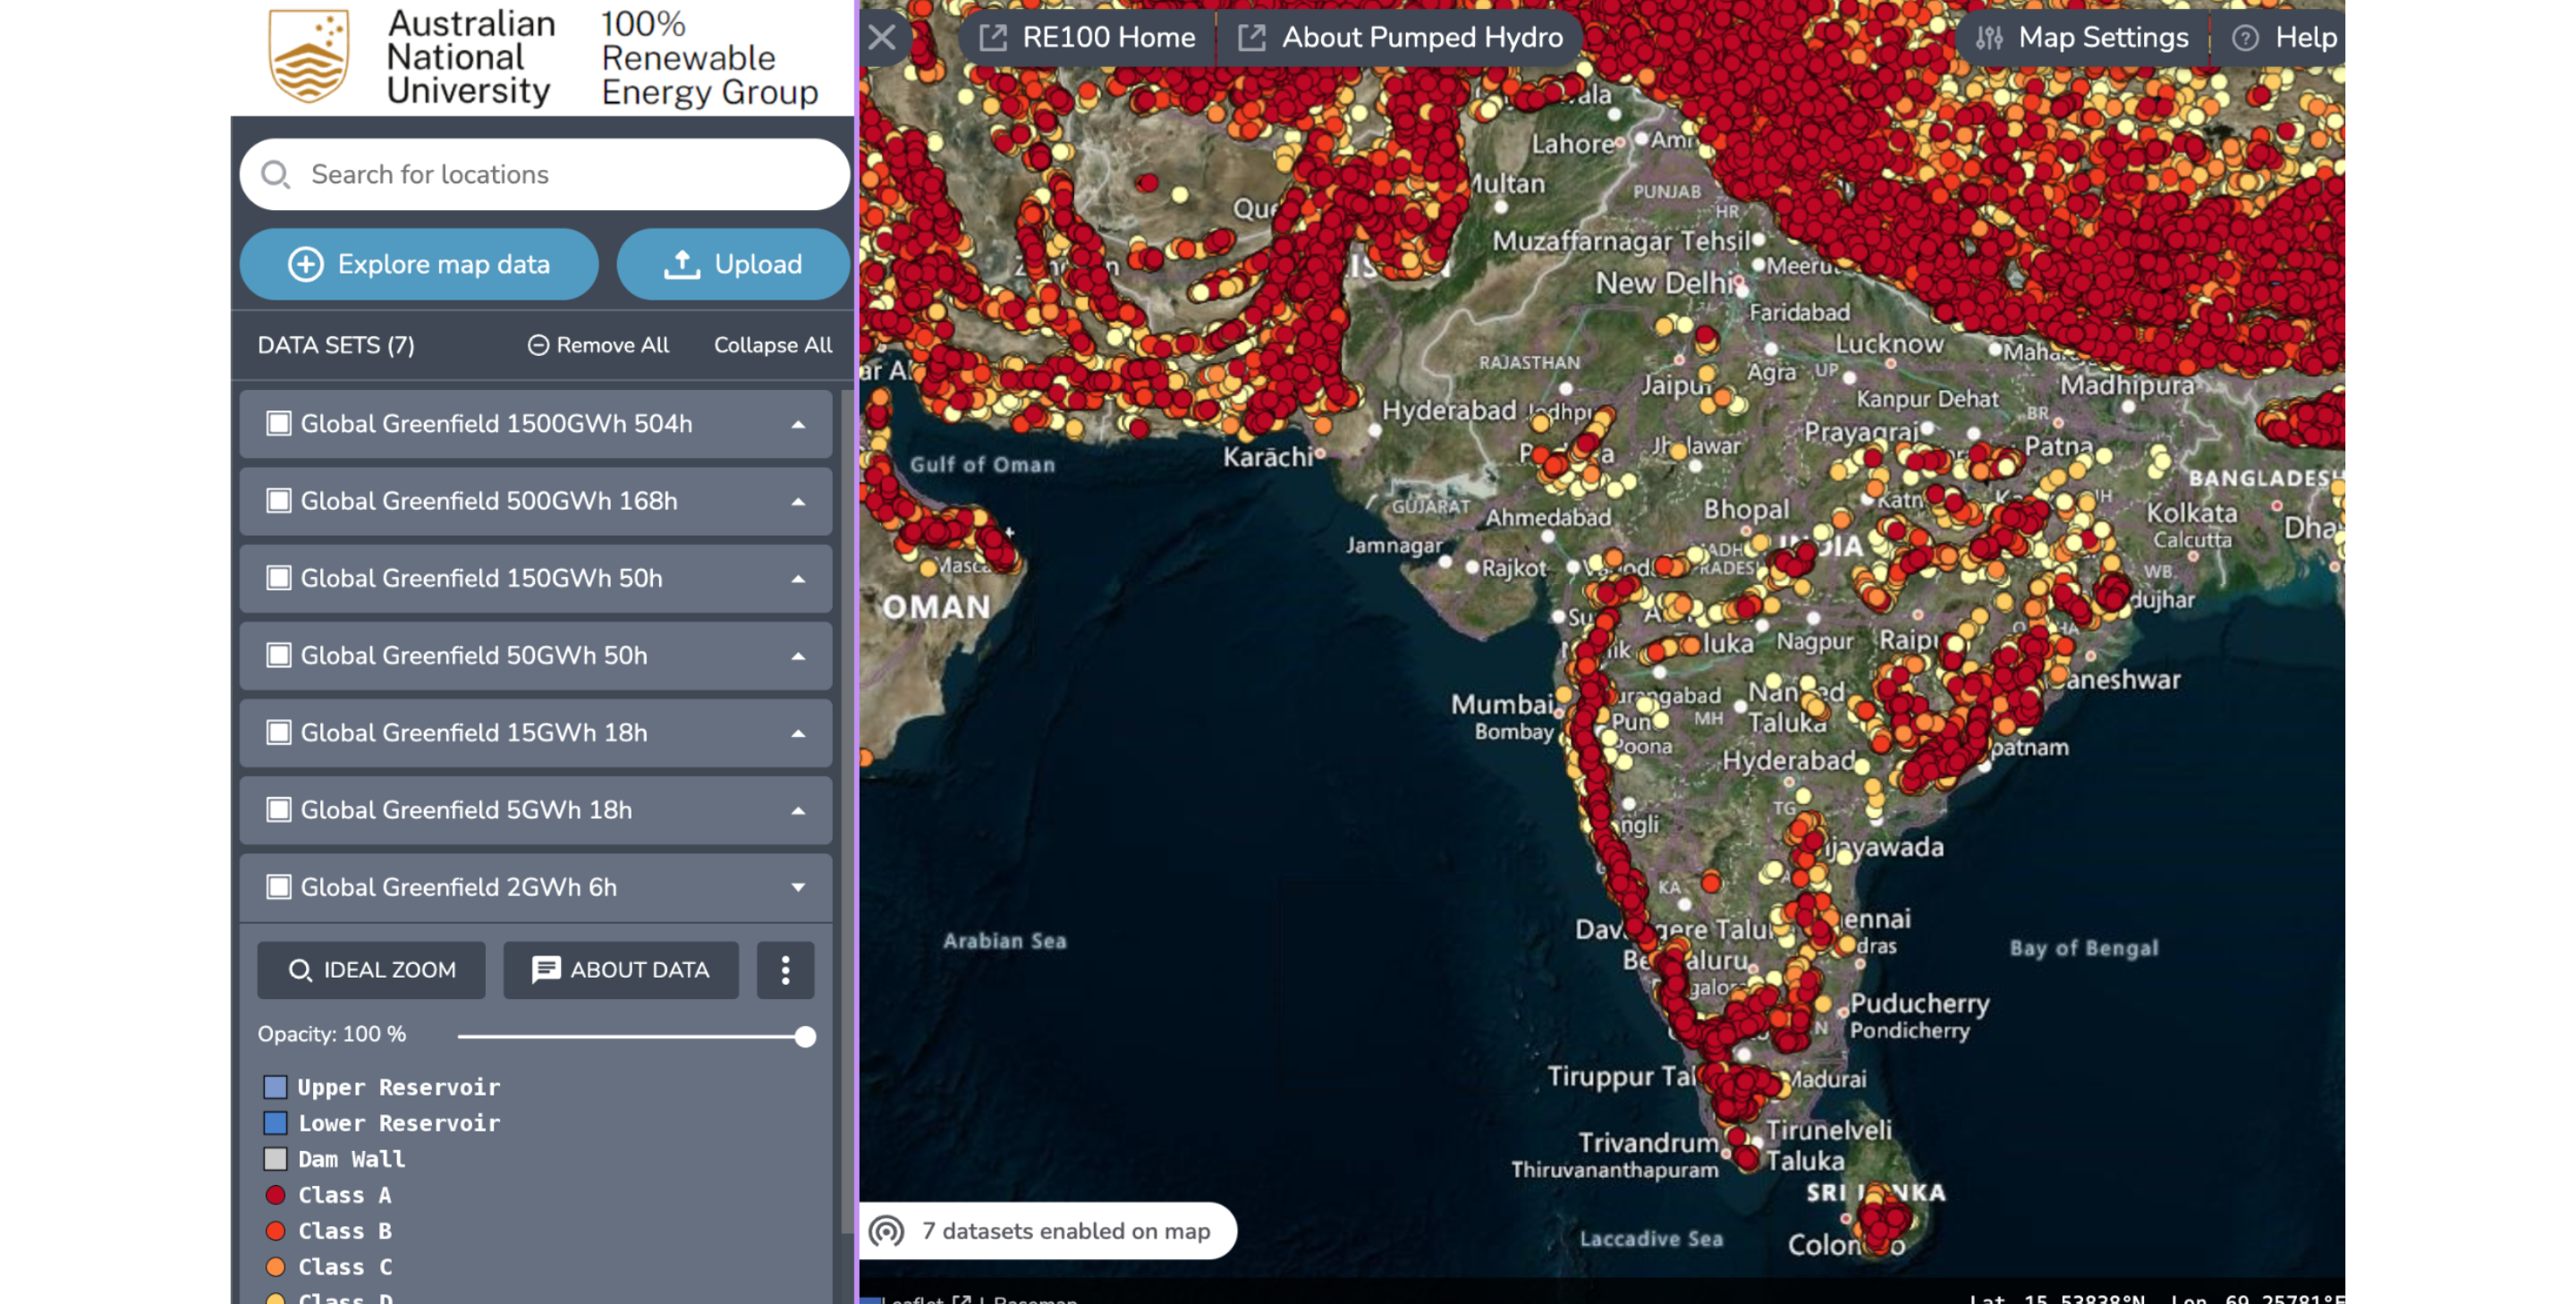 Loop tertutup, kapasitas sumber daya air yang dipompa di India berdasarkan atlas greenfield GIS global Universitas Nasional Australia